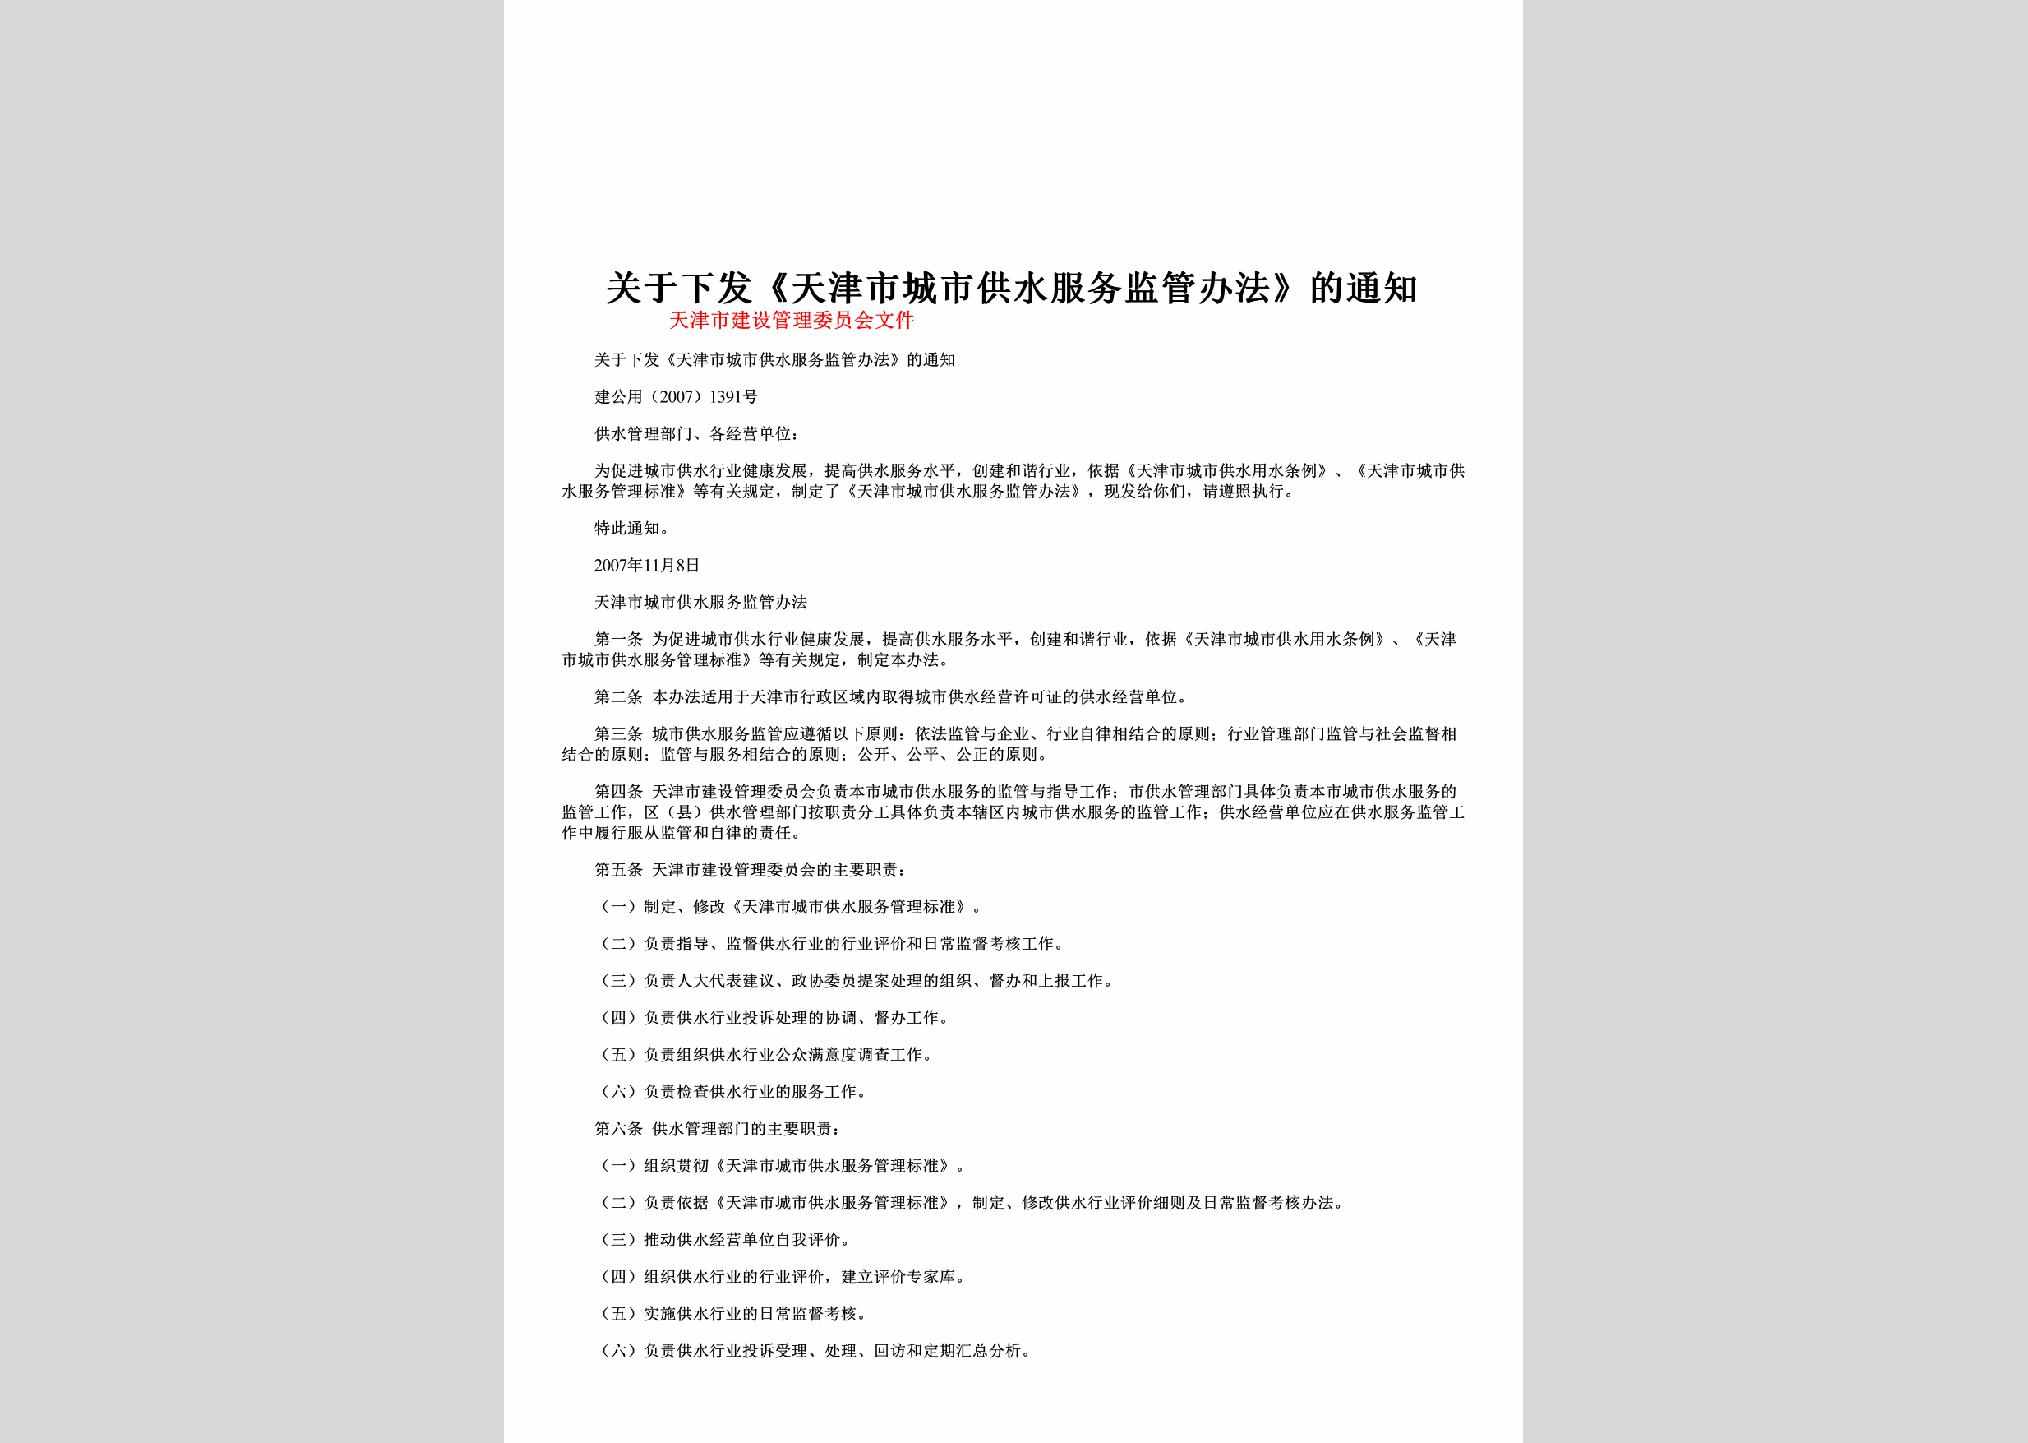 建公用[2007]1391号：关于下发《天津市城市供水服务监管办法》的通知